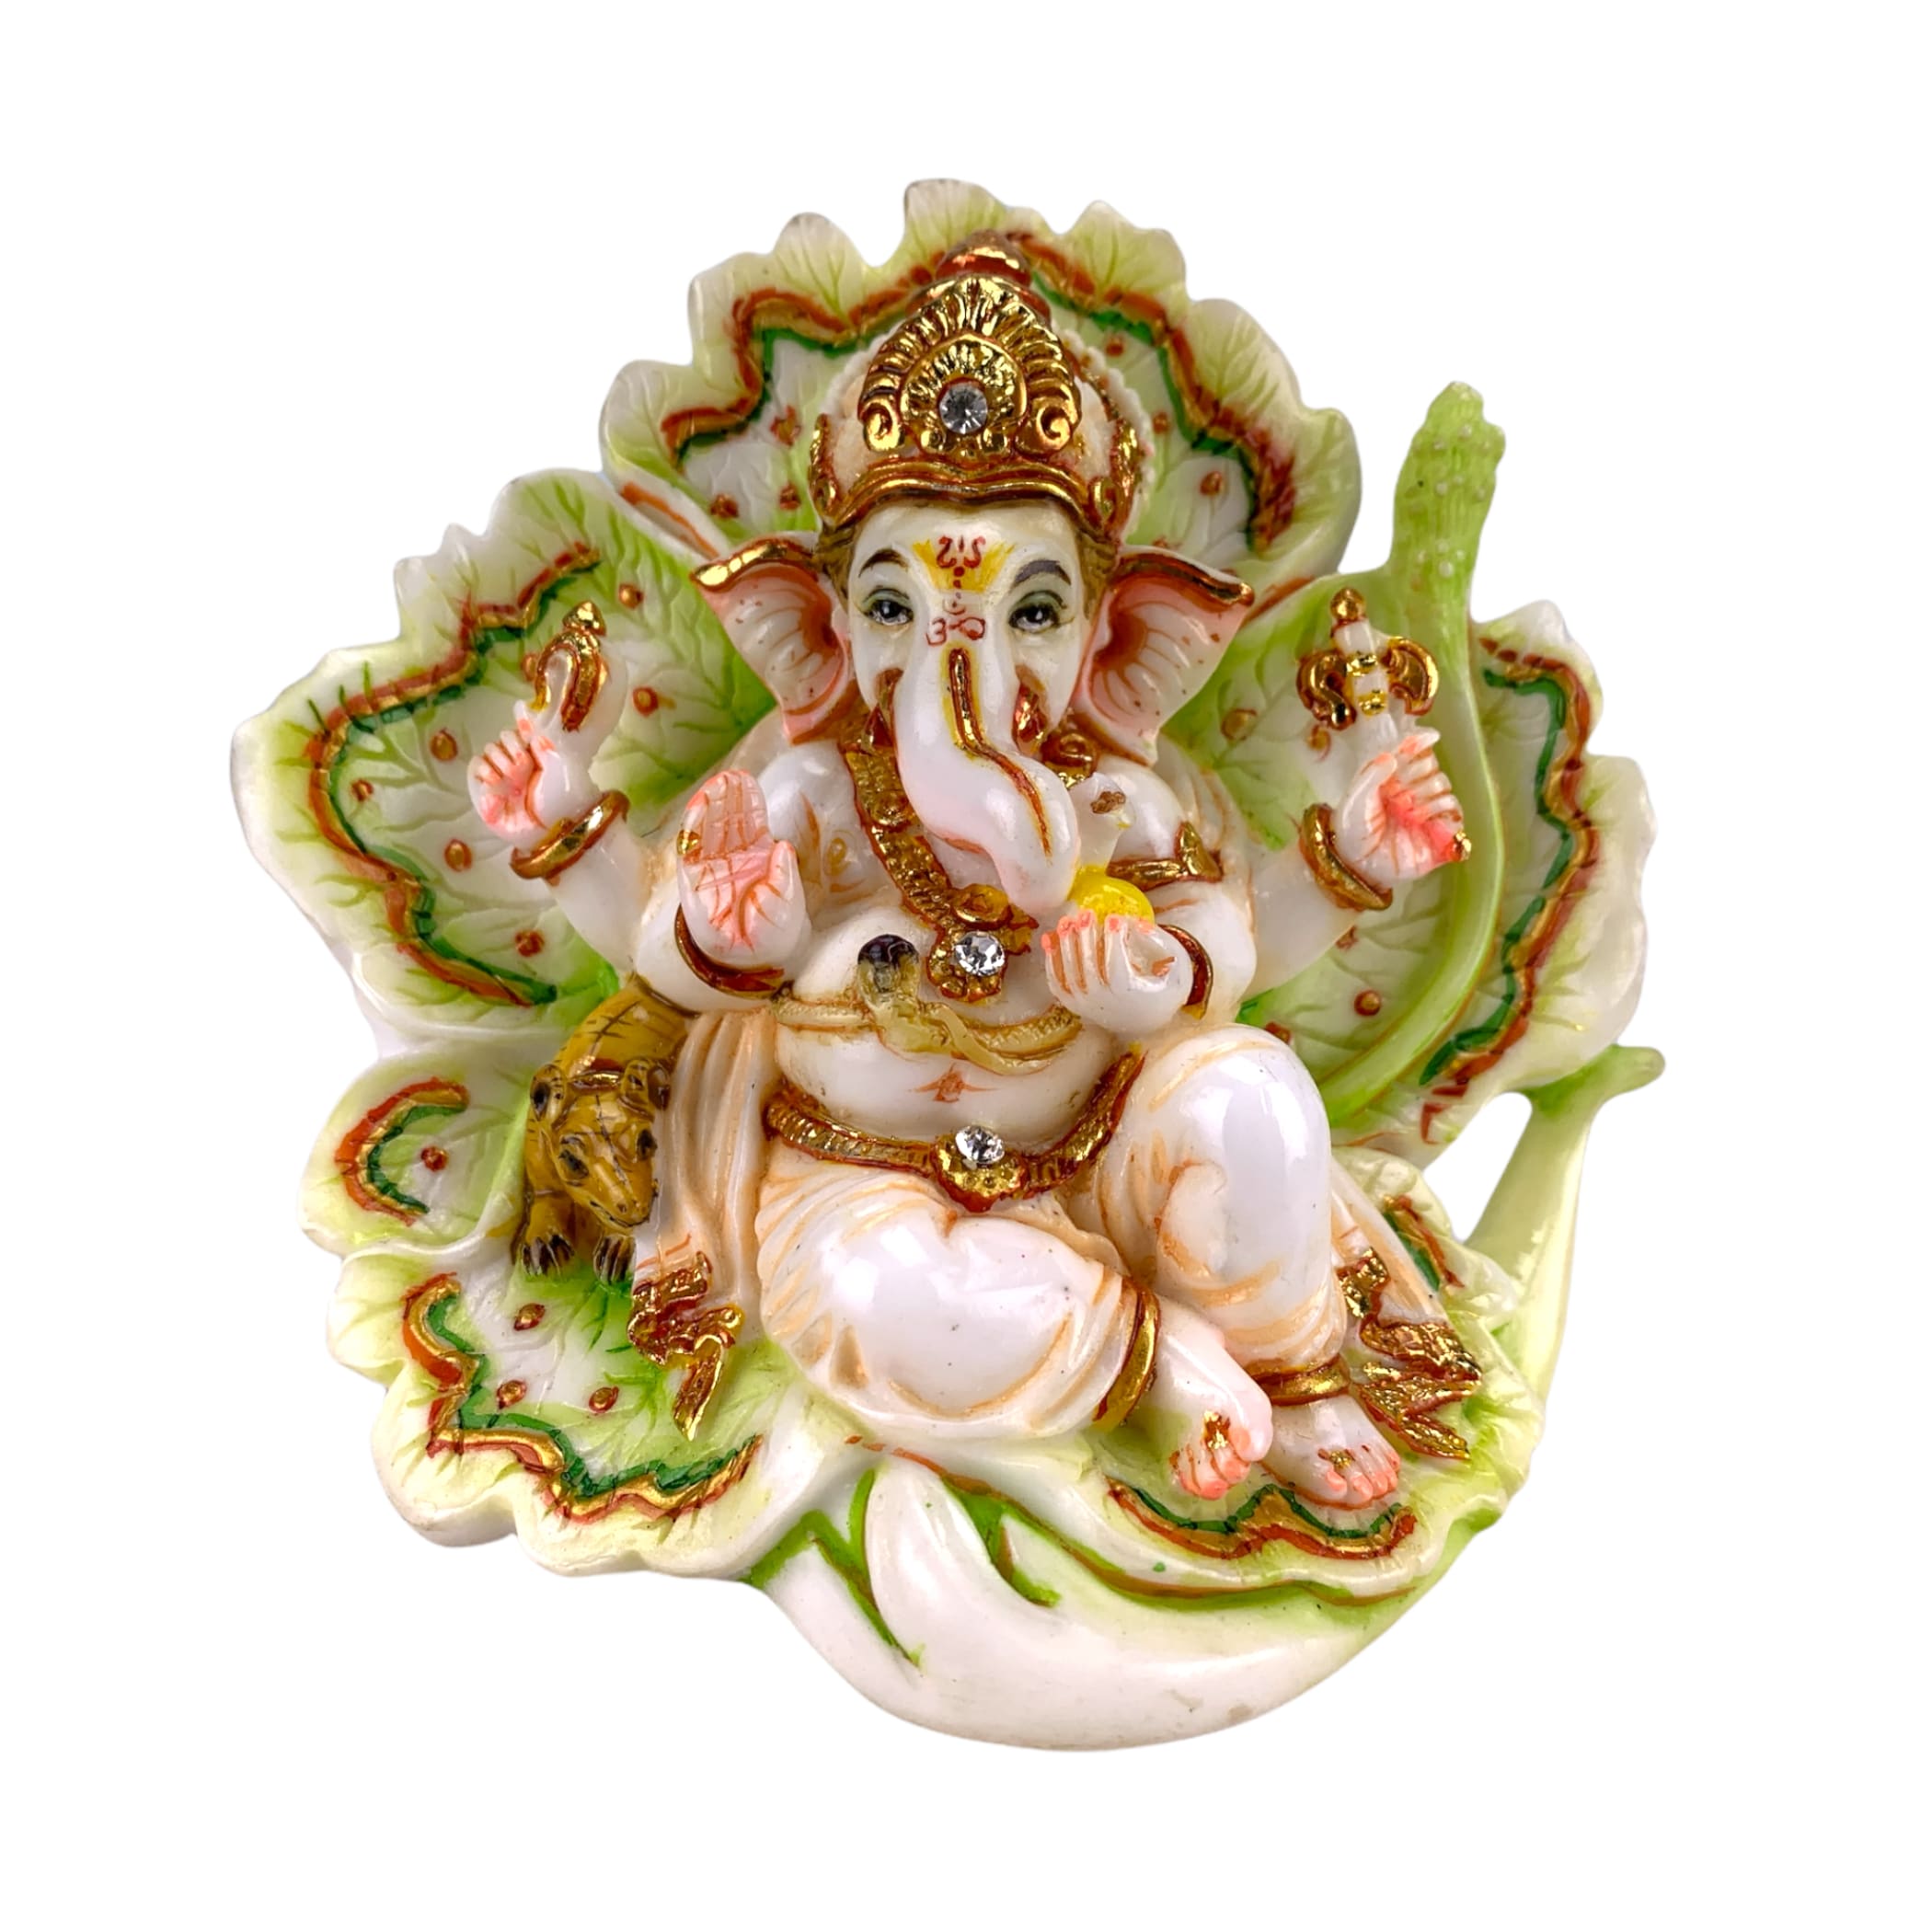 Ganesha idol altar deity ganesh ganapati statue culture